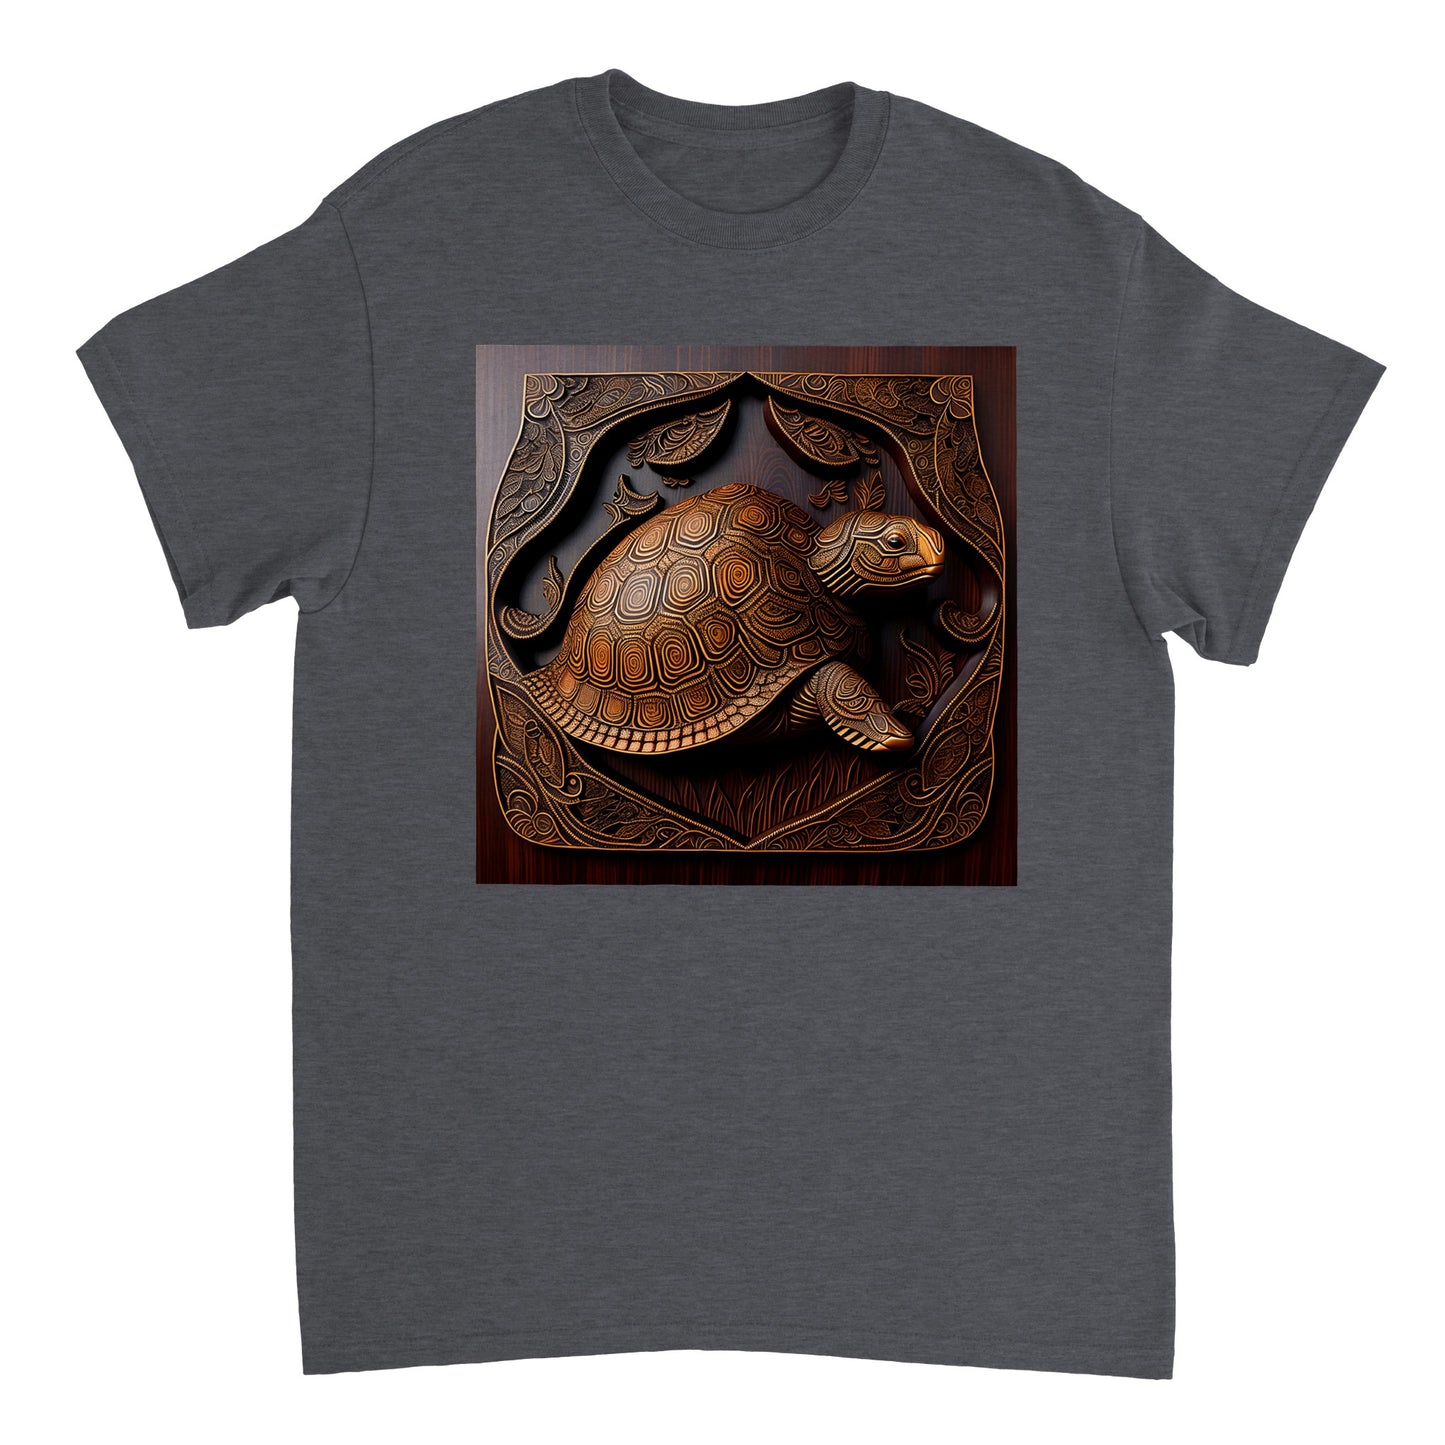 3D Wooden Animal Art - Heavyweight Unisex Crewneck T-shirt 63